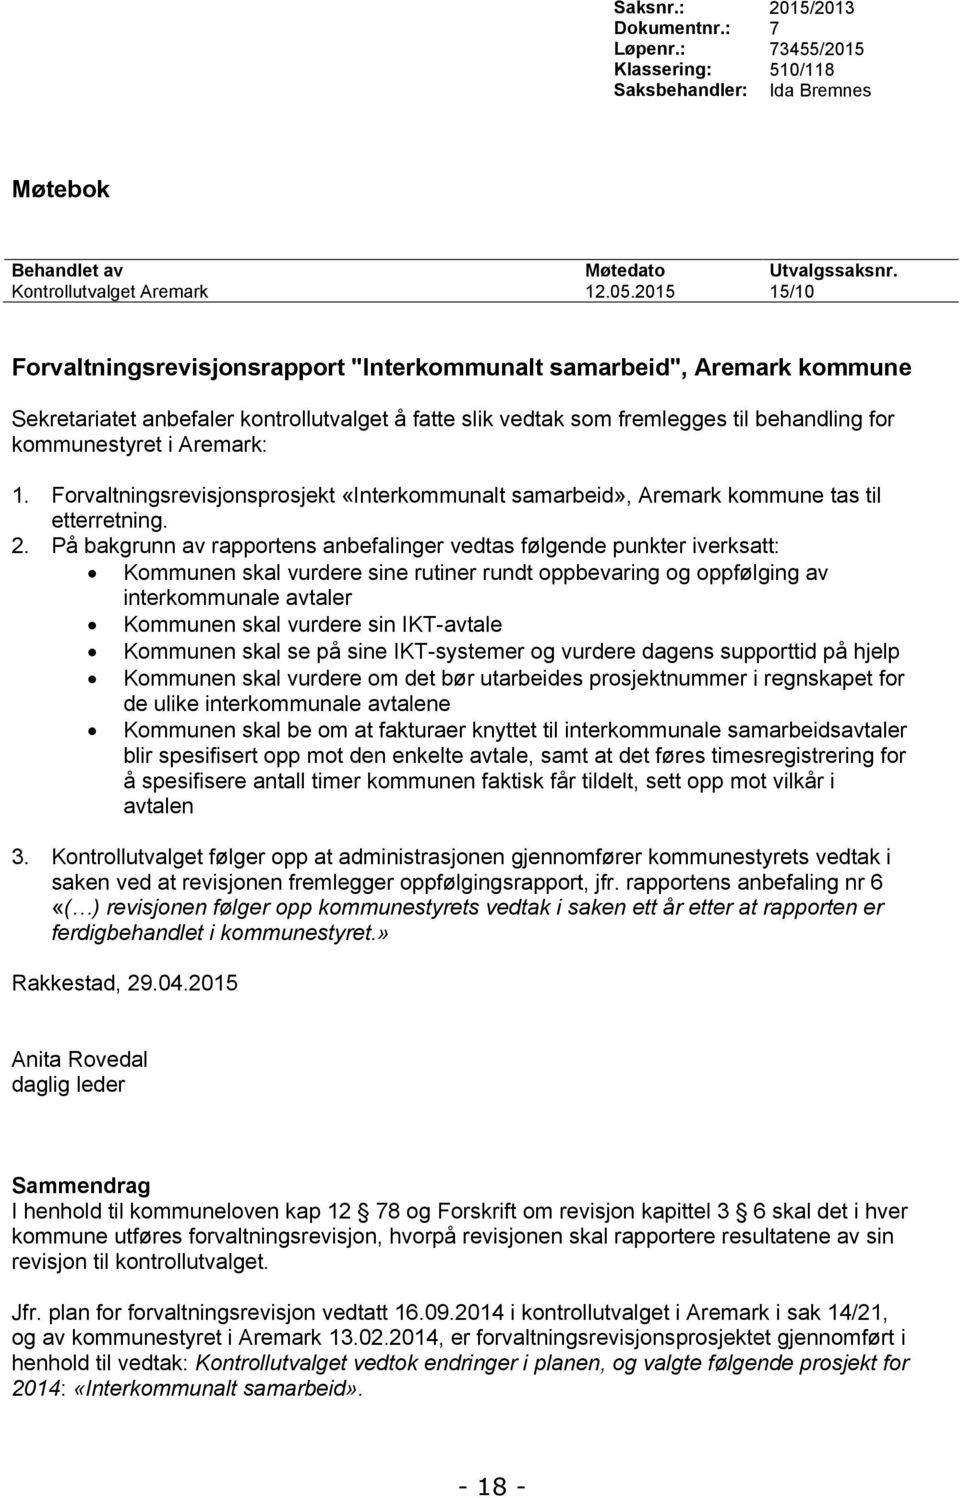 Aremark: 1. Forvaltningsrevisjonsprosjekt «Interkommunalt samarbeid», Aremark kommune tas til etterretning. 2.